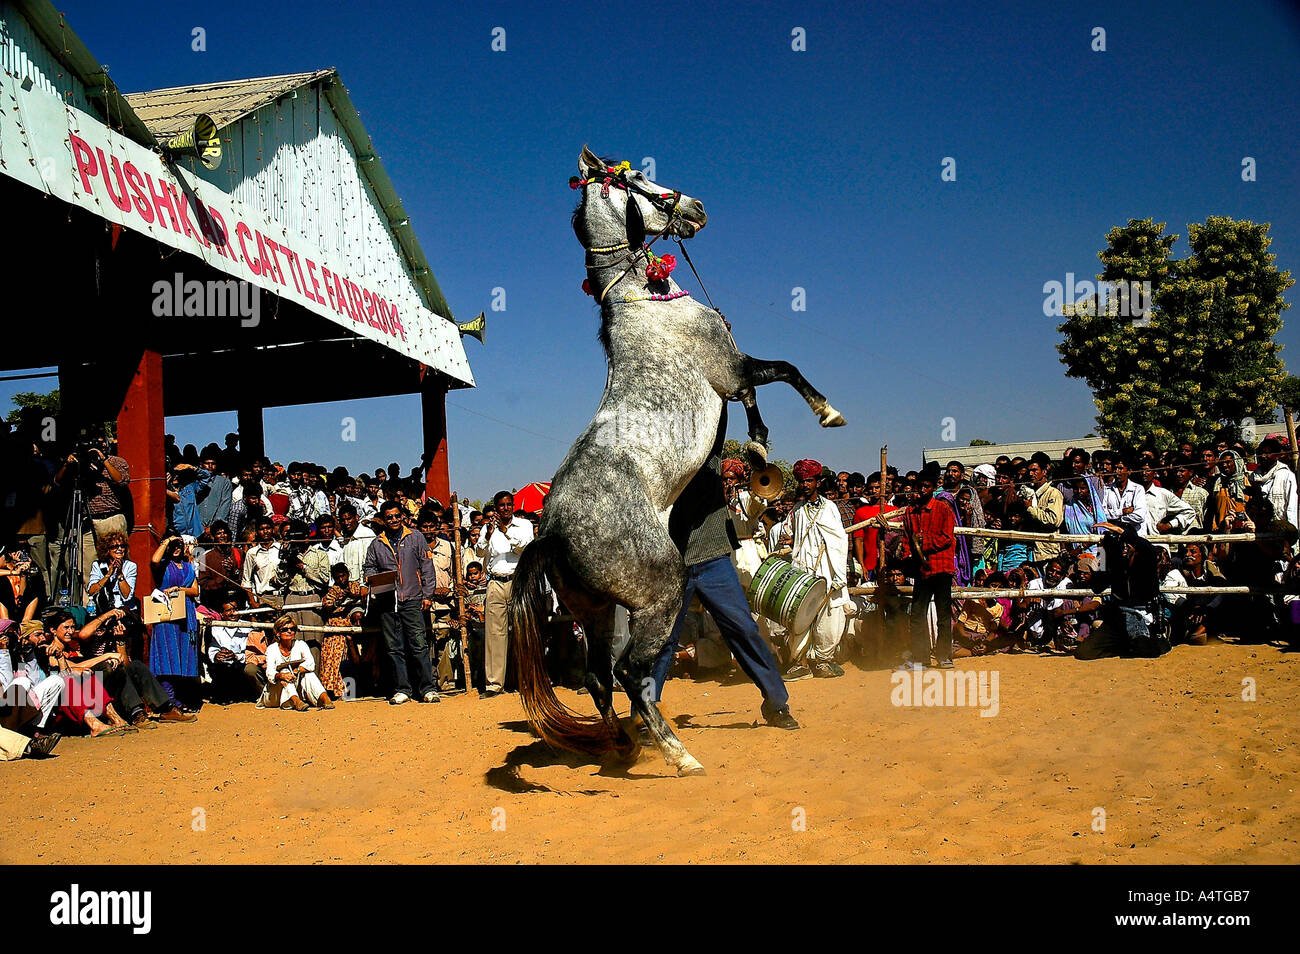 SUB98528 Cavallo performance di danza essendo apprezzato dai turisti stranieri Pushkar fiera del bestiame 2004 Rajasthan in India Foto Stock